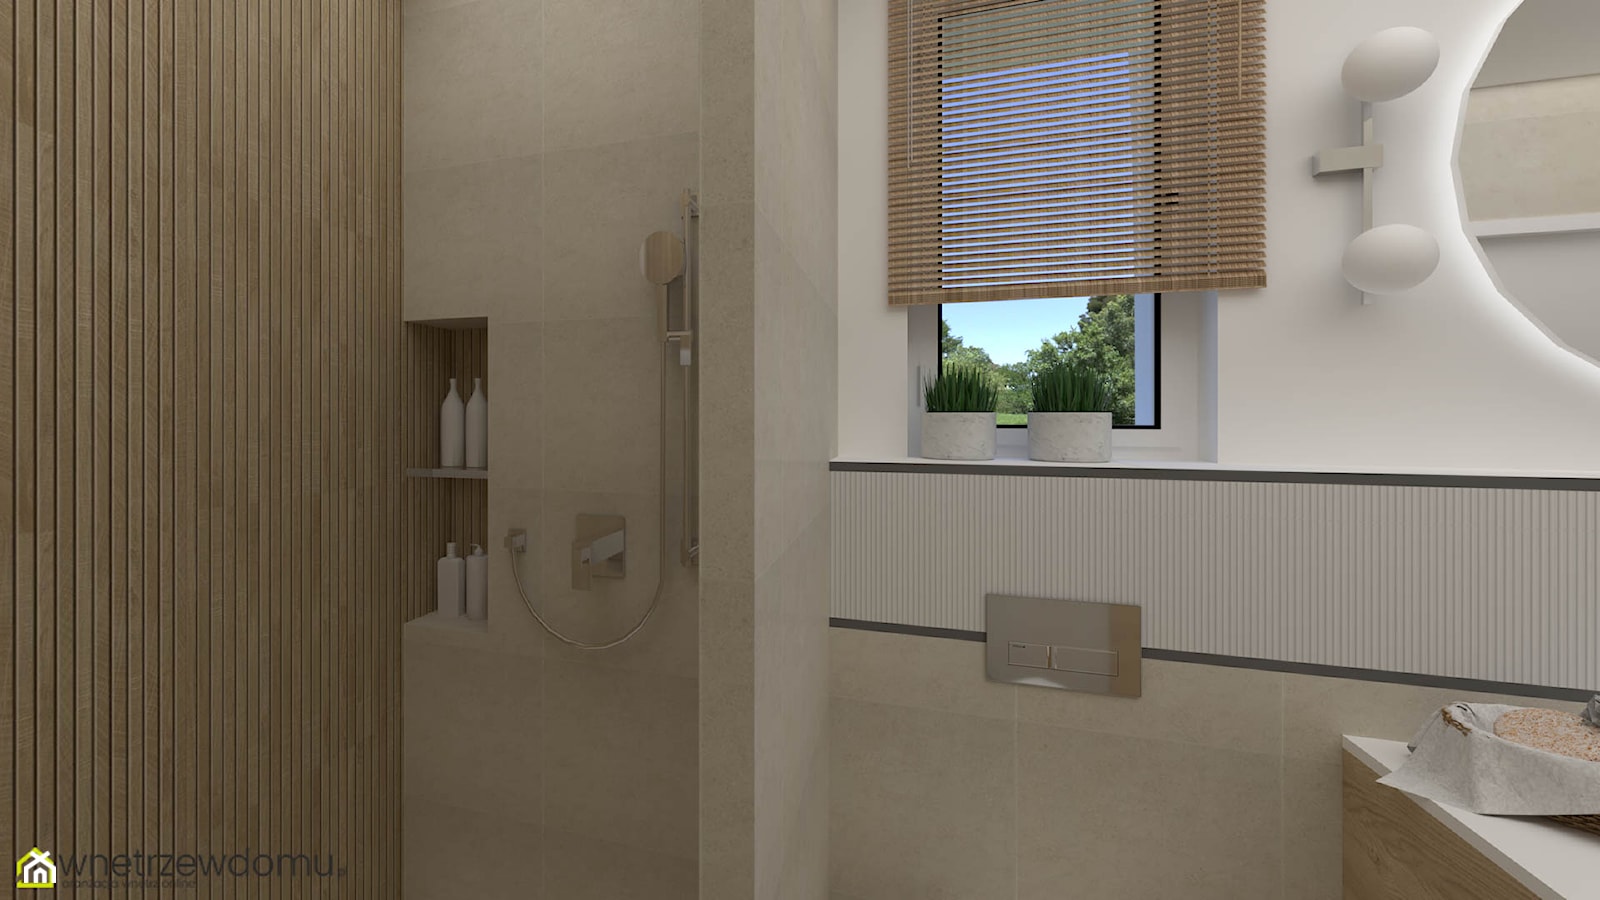 Biel i drewno w niewielkiej łazience ze ścianką prysznicową - zdjęcie od wnetrzewdomu - Homebook